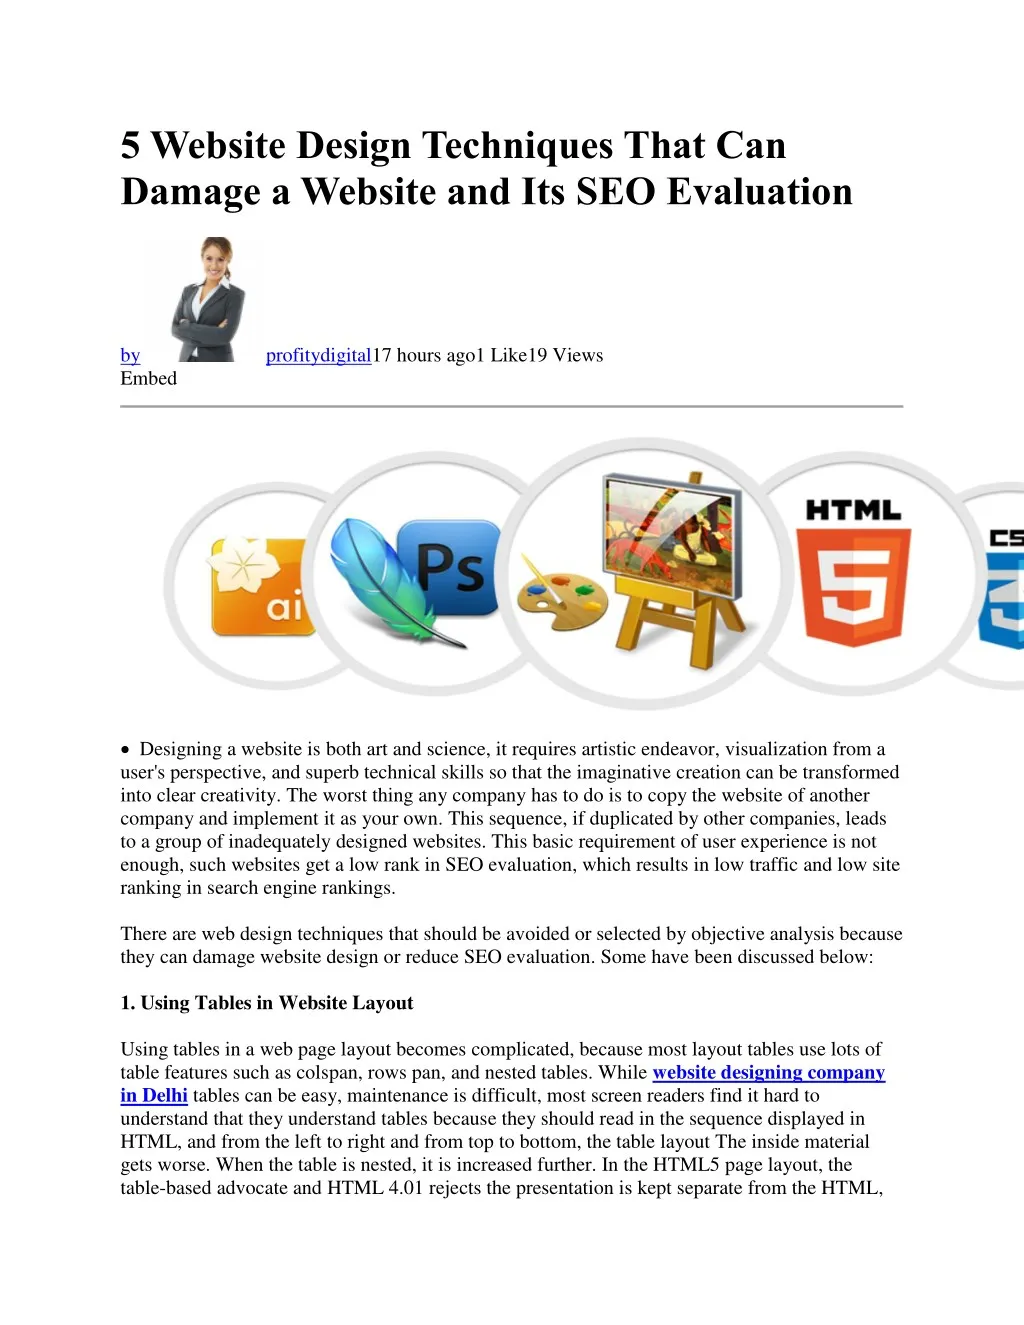 5 website design techniques that can damage